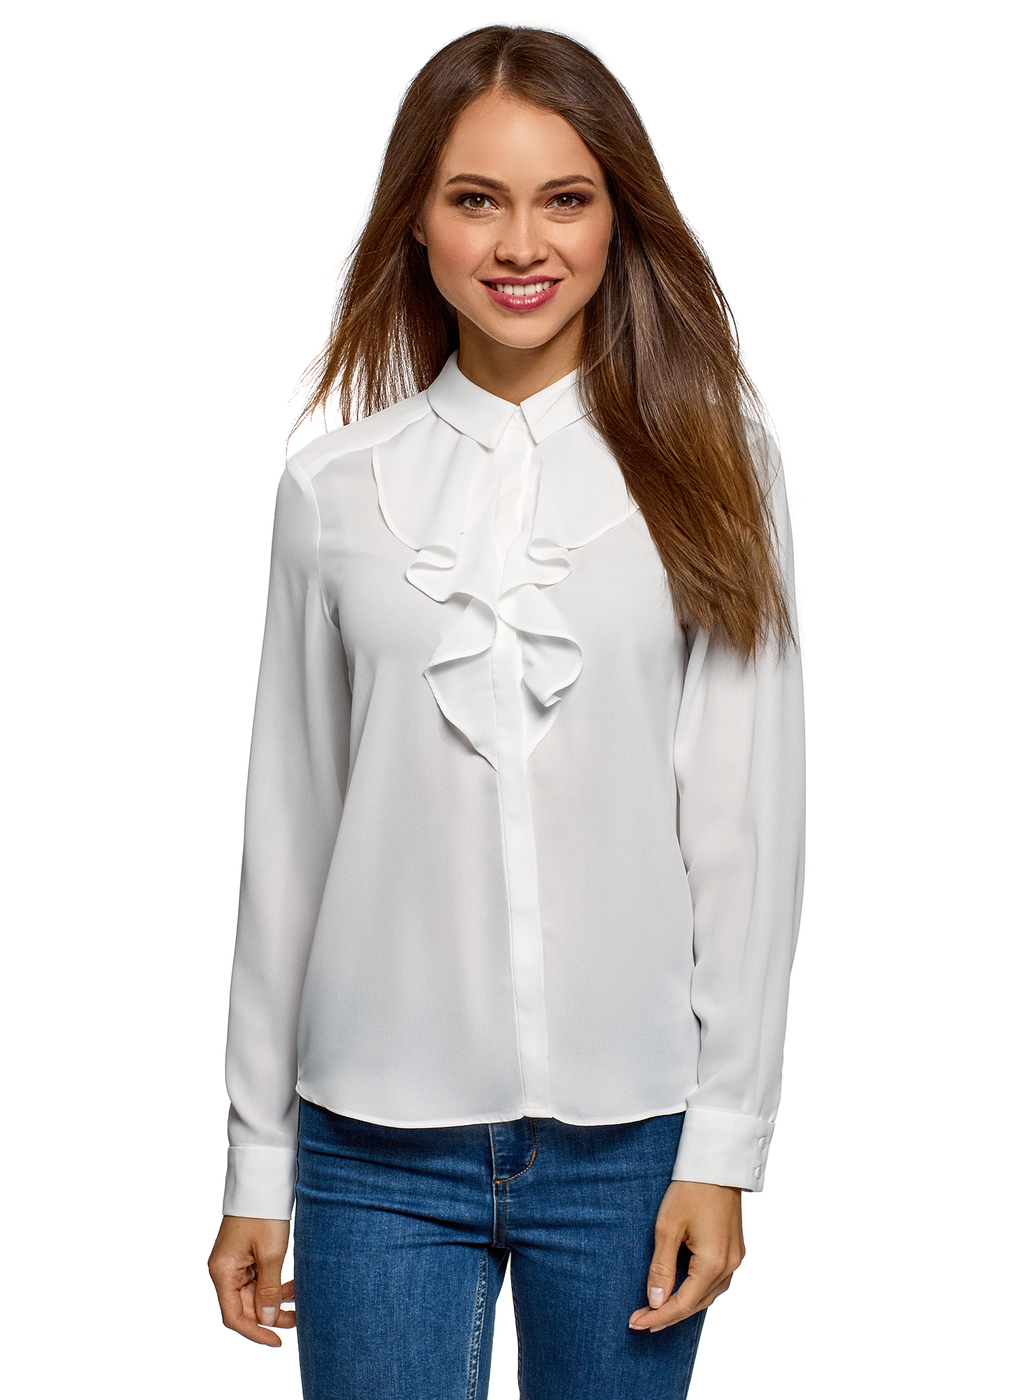 Озон белая блузка. Блузка oodji. Белая блузка oodji. Белая блузка женская. Красивые белые блузки.